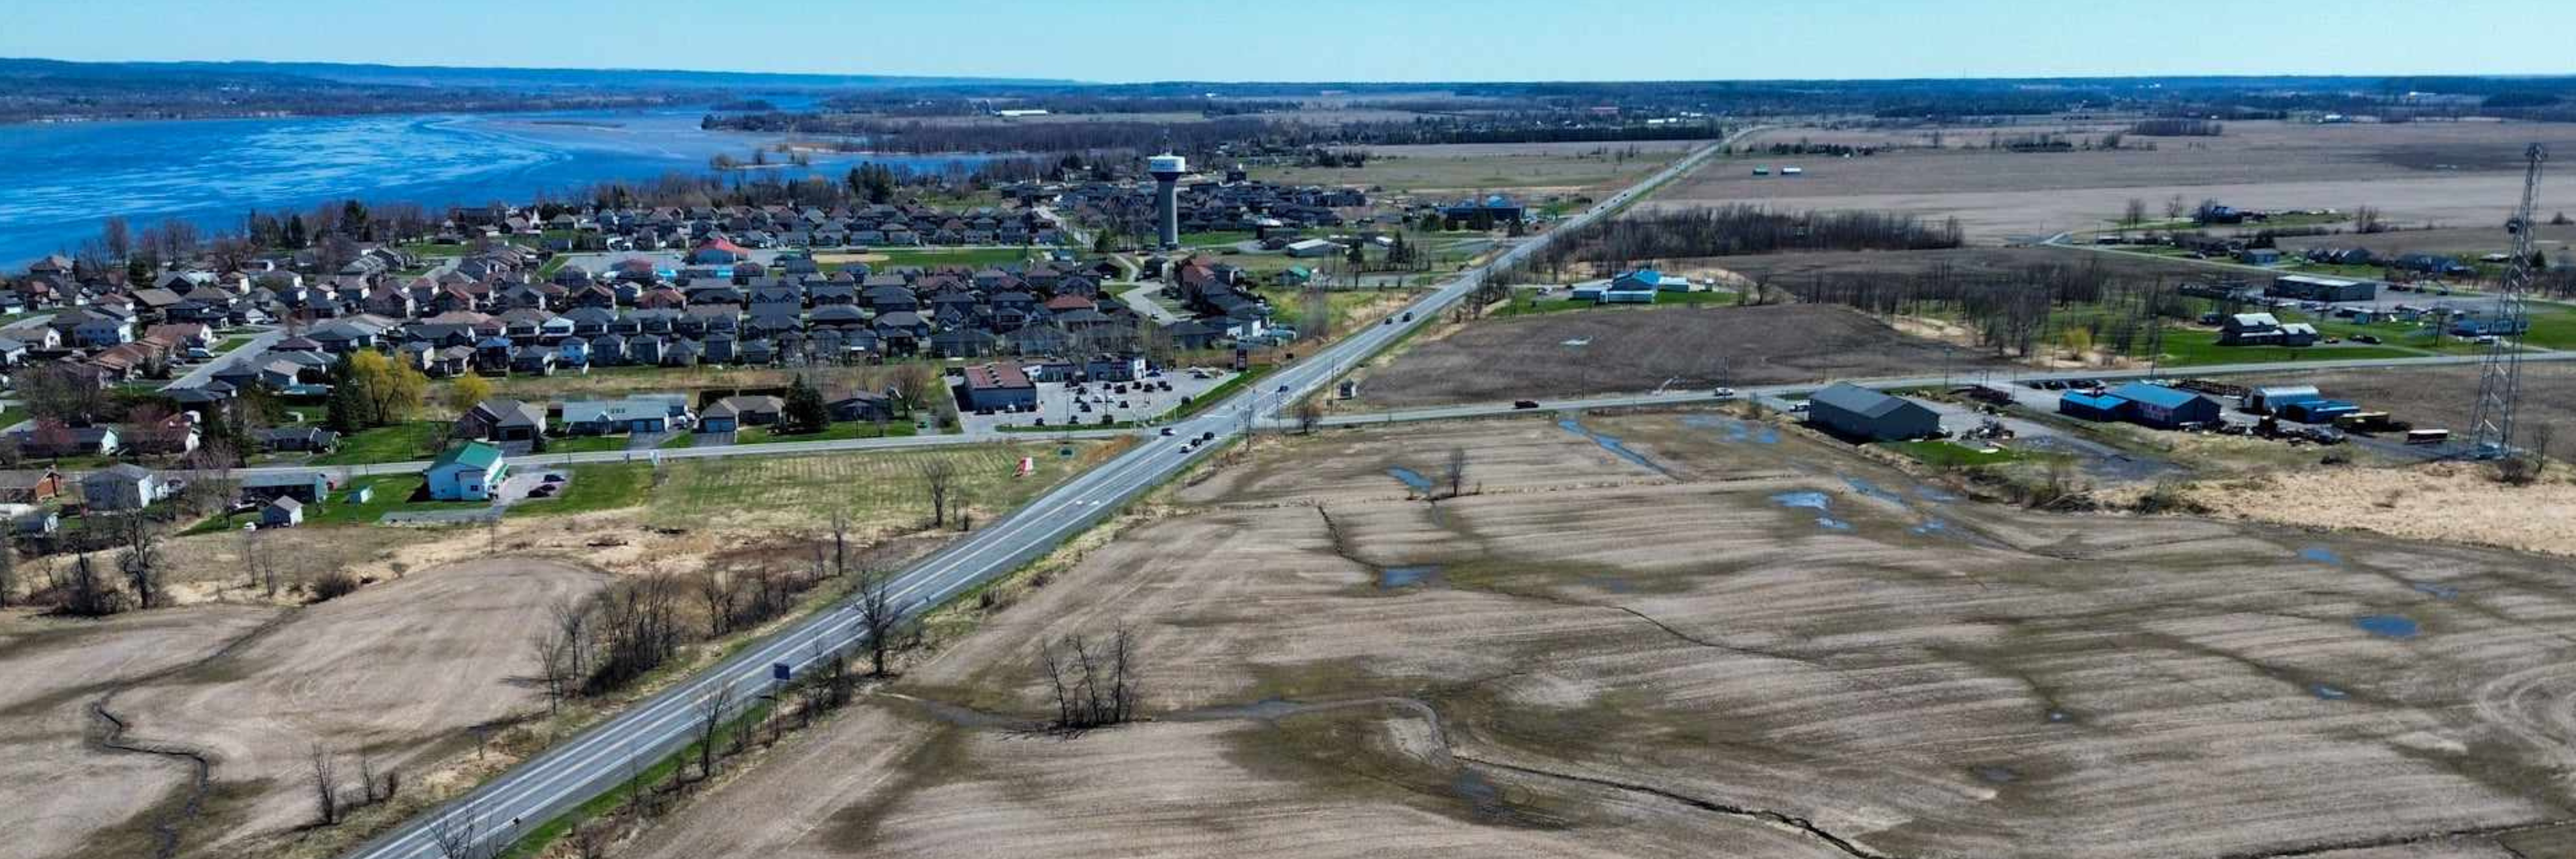 Vue aérienne du site du parc industriel avec le village de Wendover derrière et la rivière des Outaouais